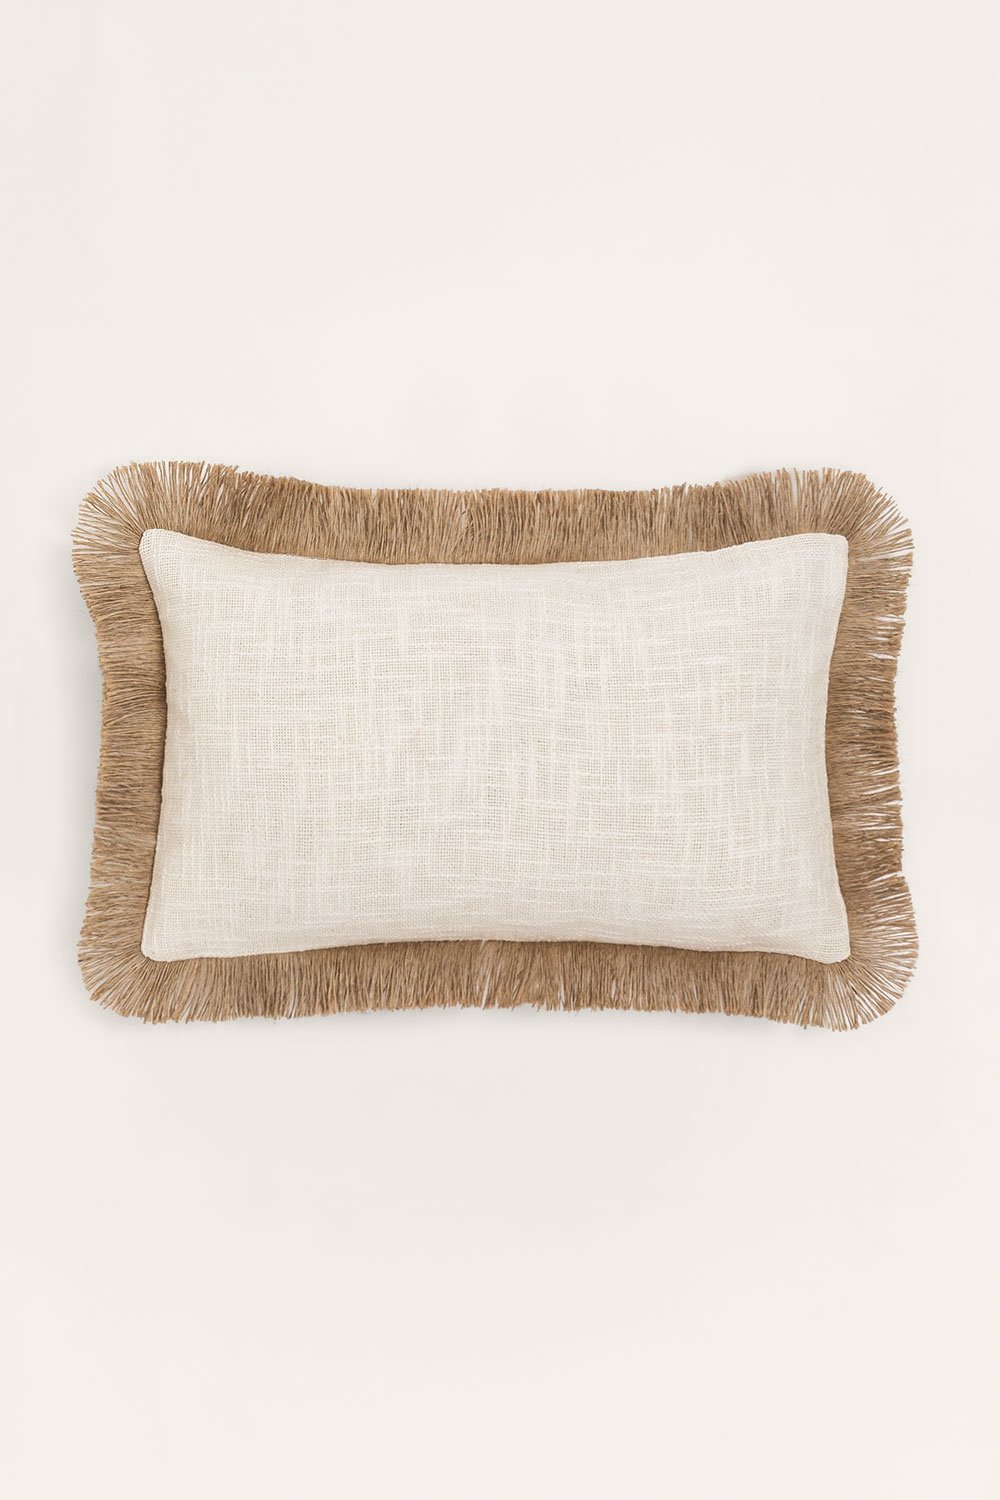 Prostokątna poduszka bawełniana (30x50 cm) Paraiba, obrazek w galerii 1